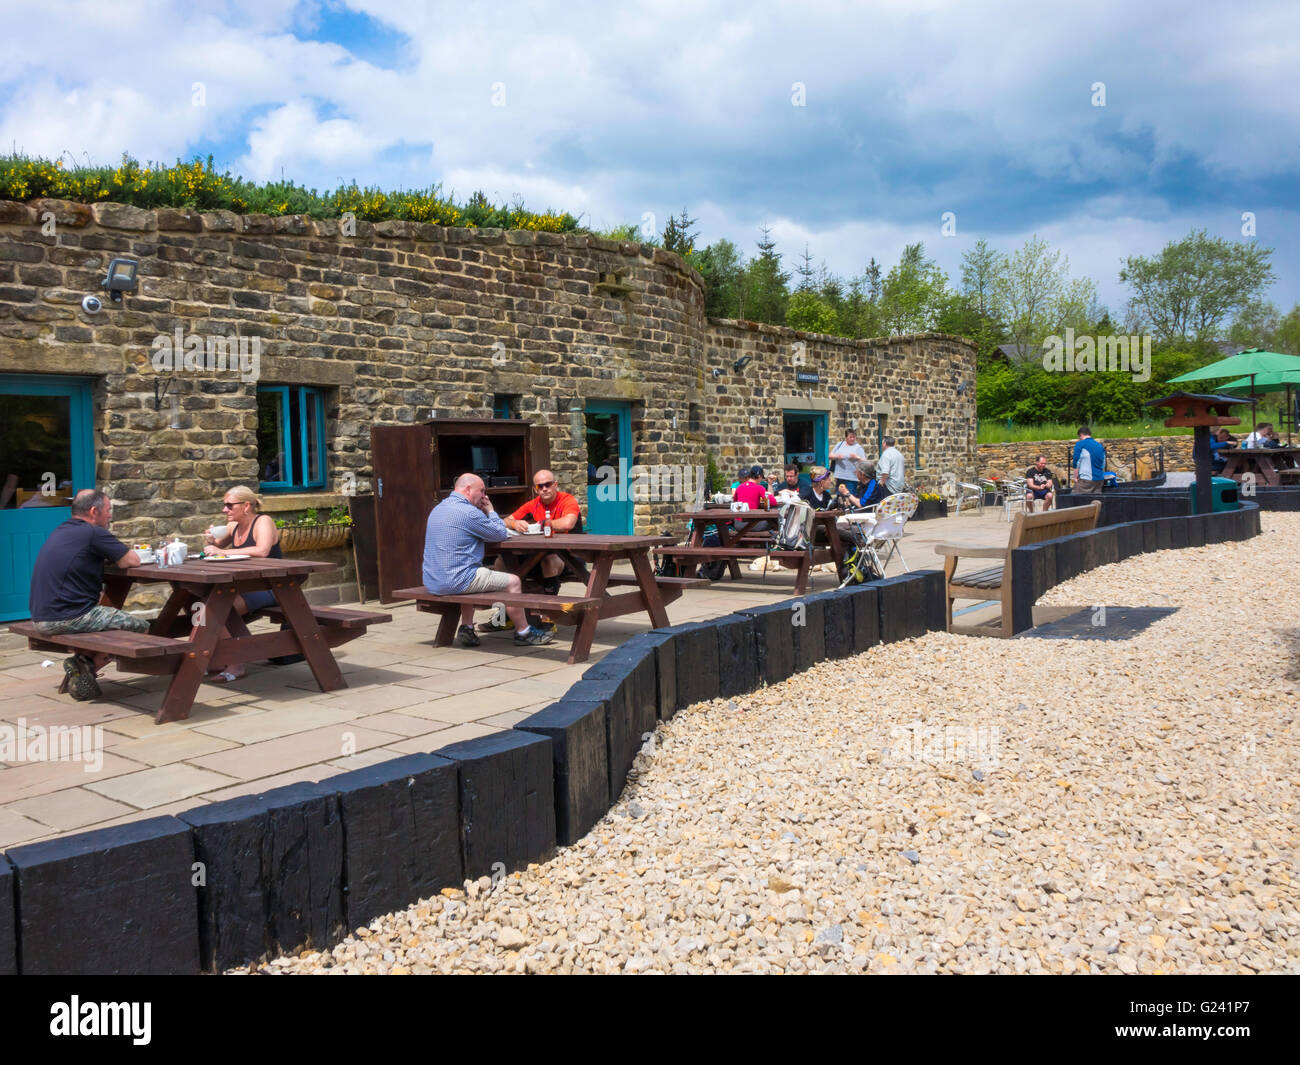 Familie Gruppen genießen Sonnenschein im beliebten Herrn Steinen Café in den Cleveland Hills North Yorkshire Moors Nationalpark Stockfoto